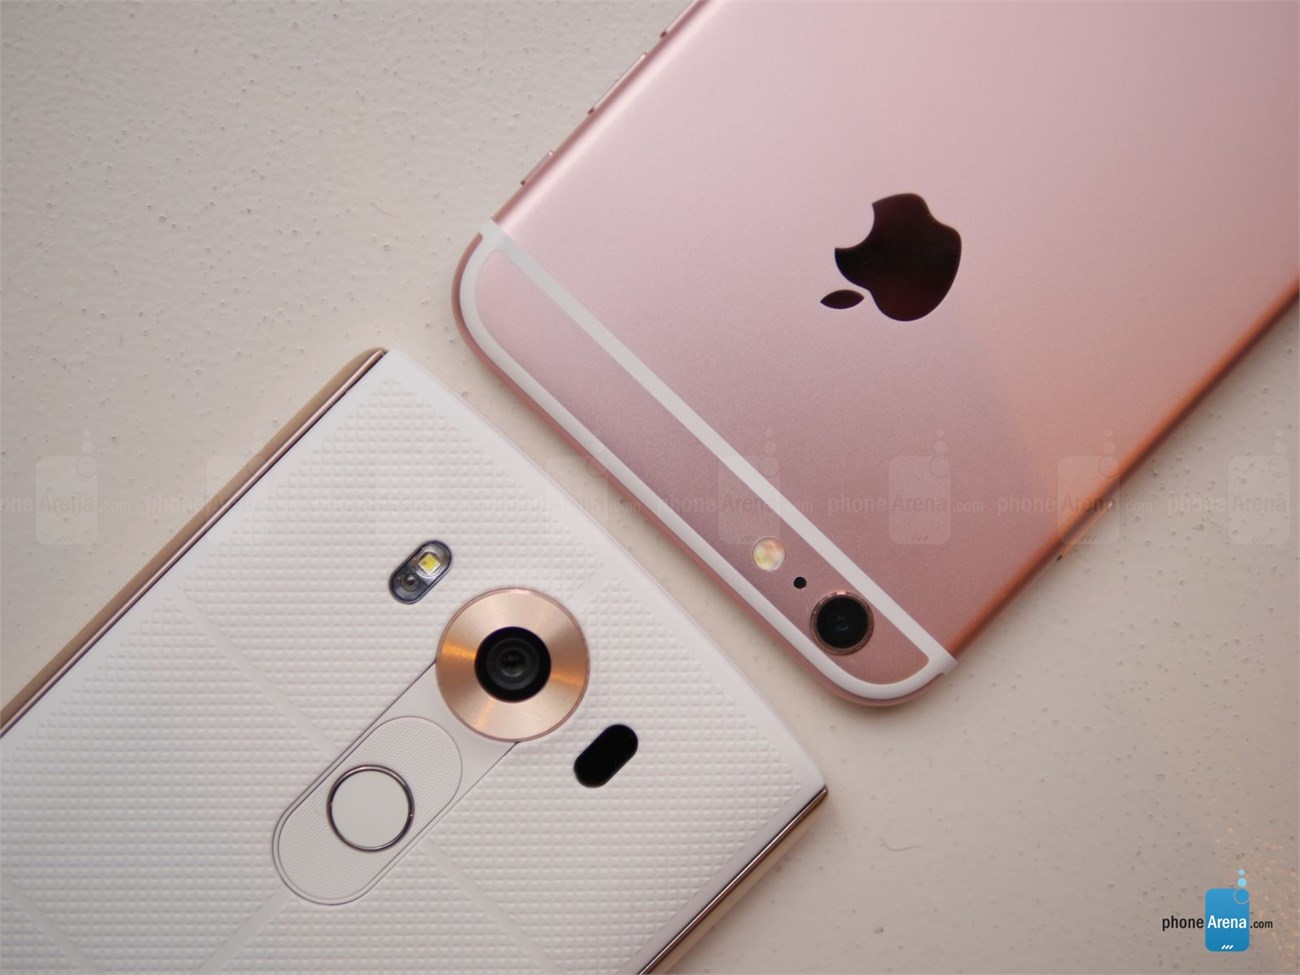 iPhone 6s Plus vs LG V10